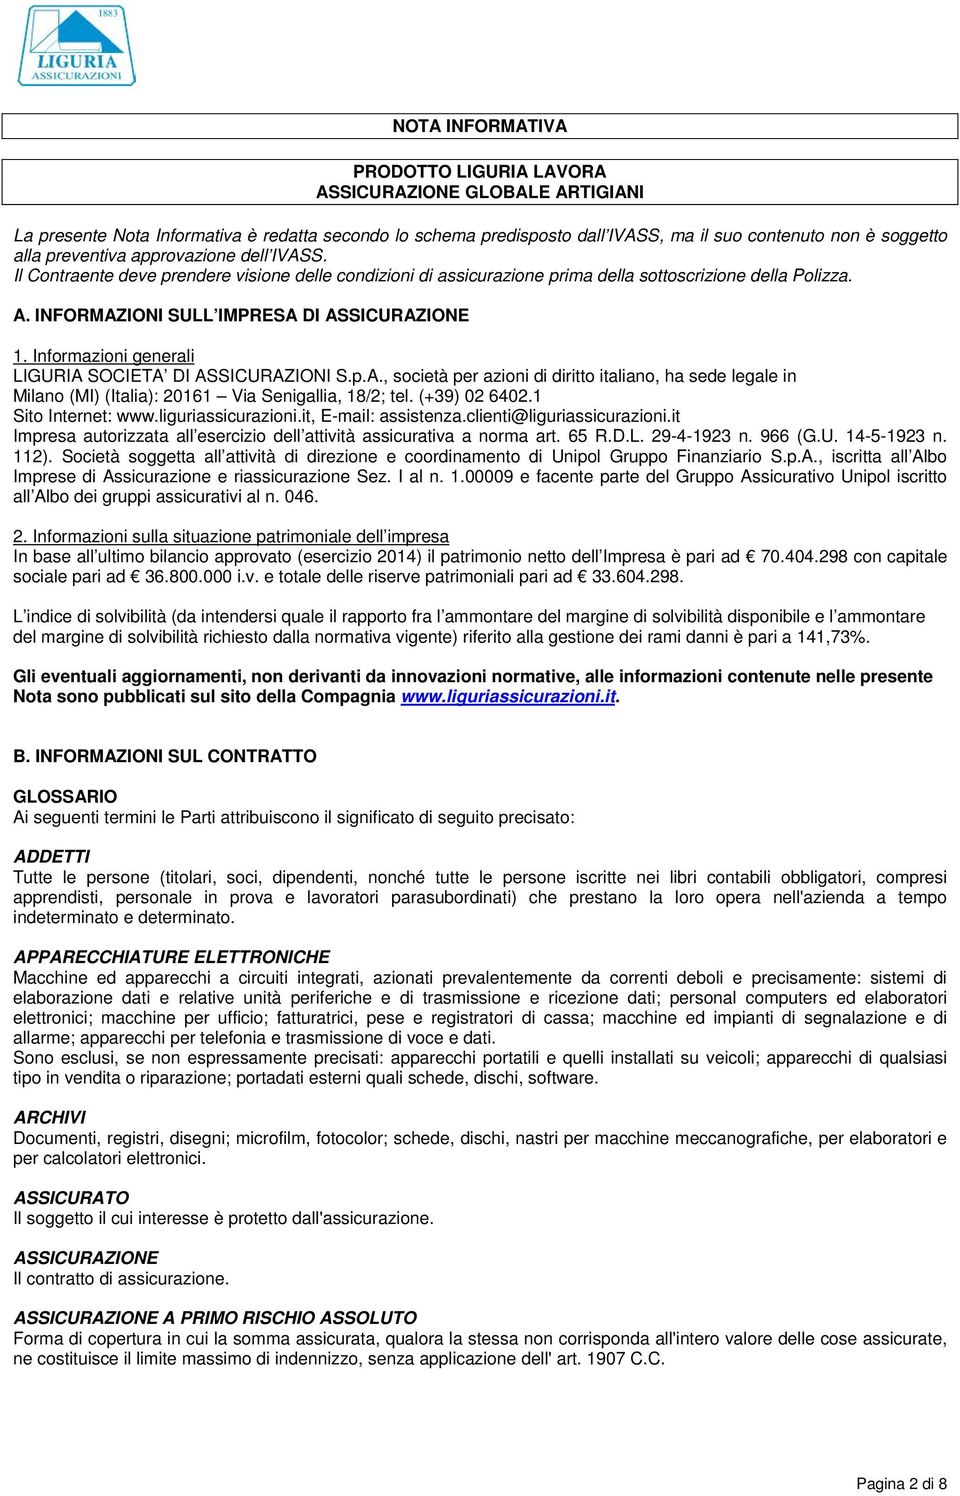 Informazioni generali LIGURIA SOCIETA DI ASSICURAZIONI S.p.A., società per azioni di diritto italiano, ha sede legale in Milano (MI) (Italia): 20161 Via Senigallia, 18/2; tel. (+39) 02 6402.